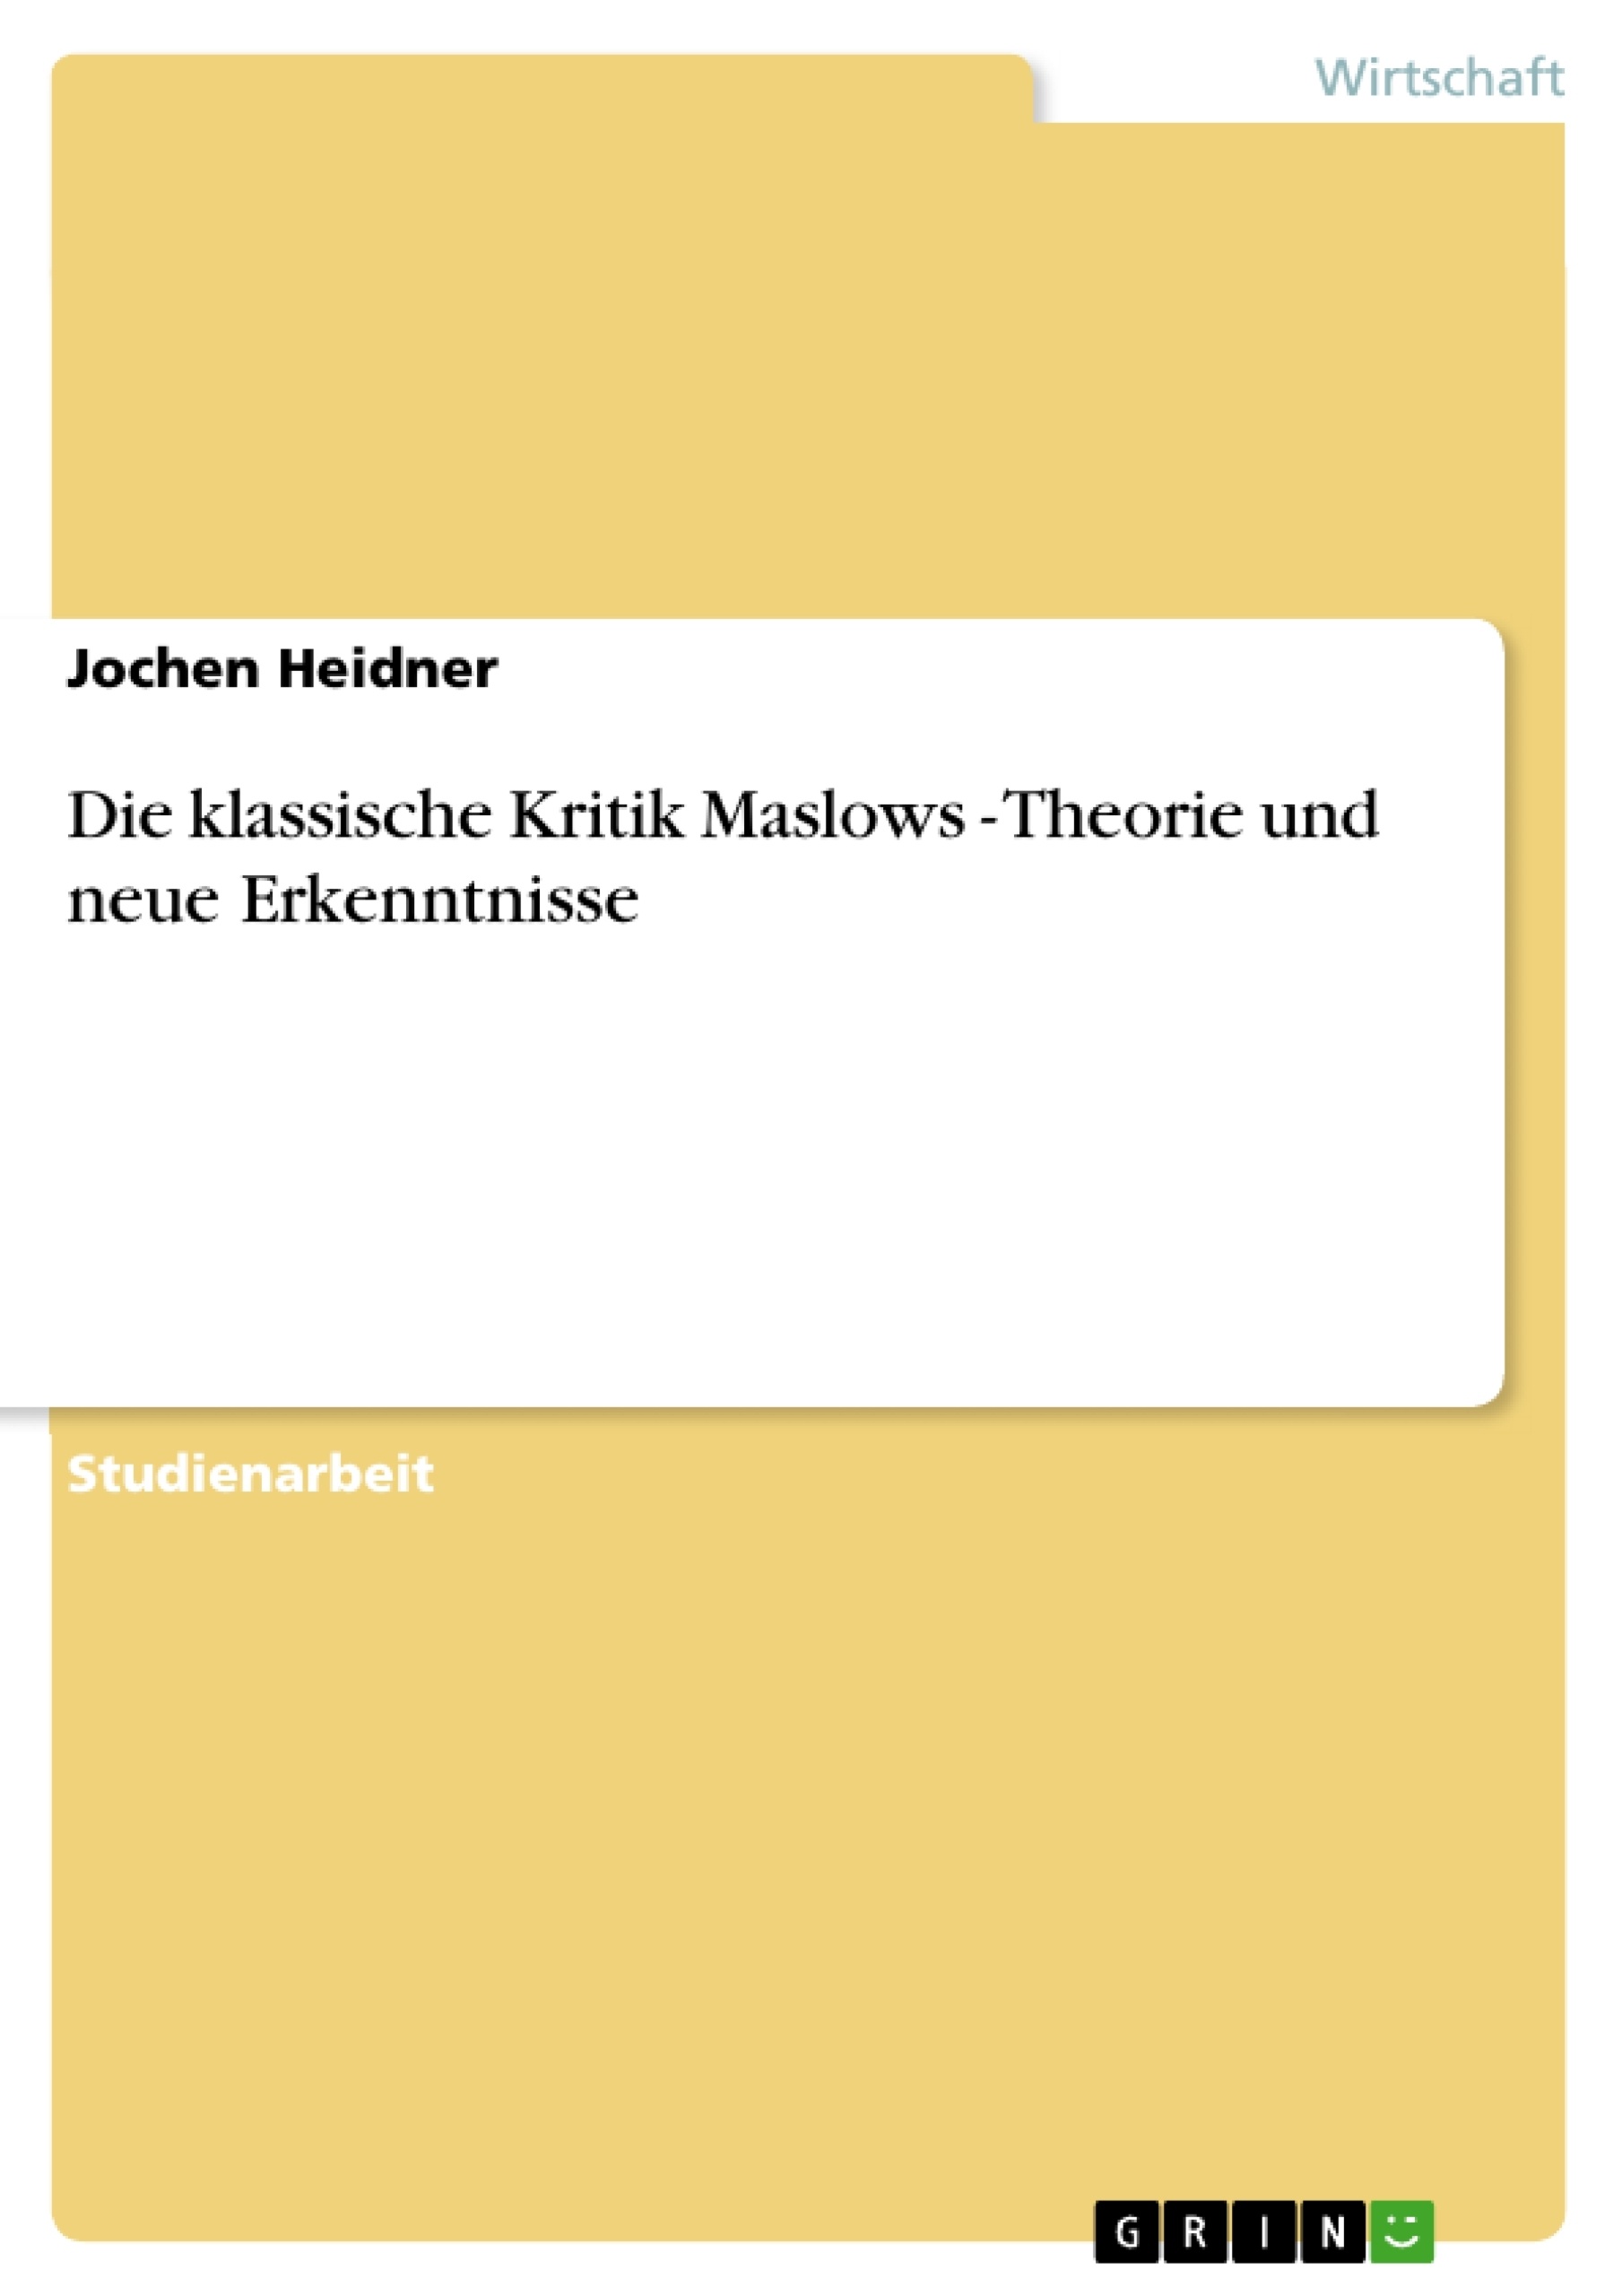 Title: Die klassische Kritik Maslows - Theorie und neue Erkenntnisse